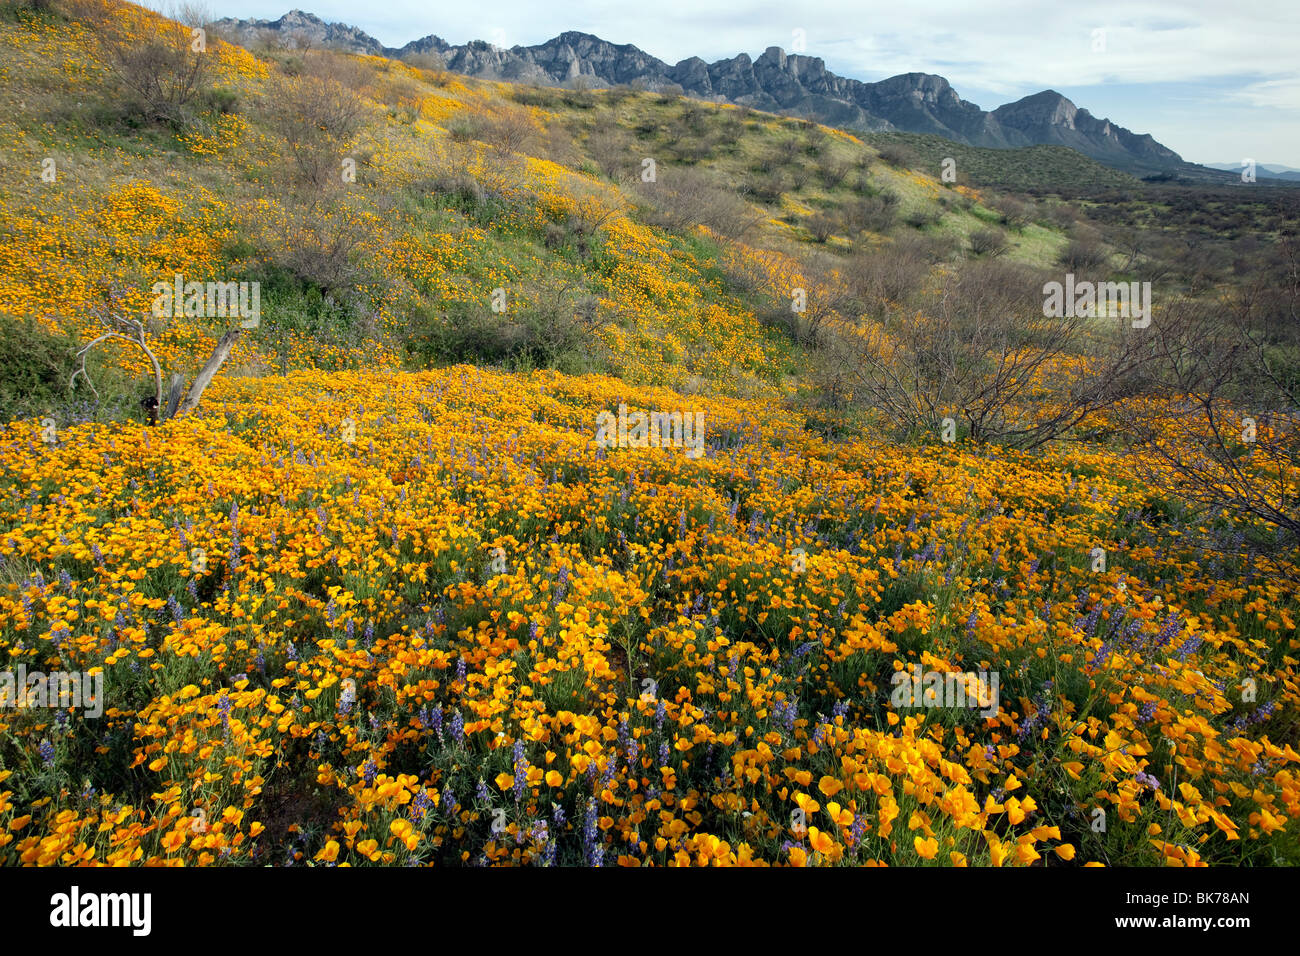 Meer von Wildblumen, California Poppies und Wüste Lupine, Catalina State Park, Tucson, Arizona Stockfoto